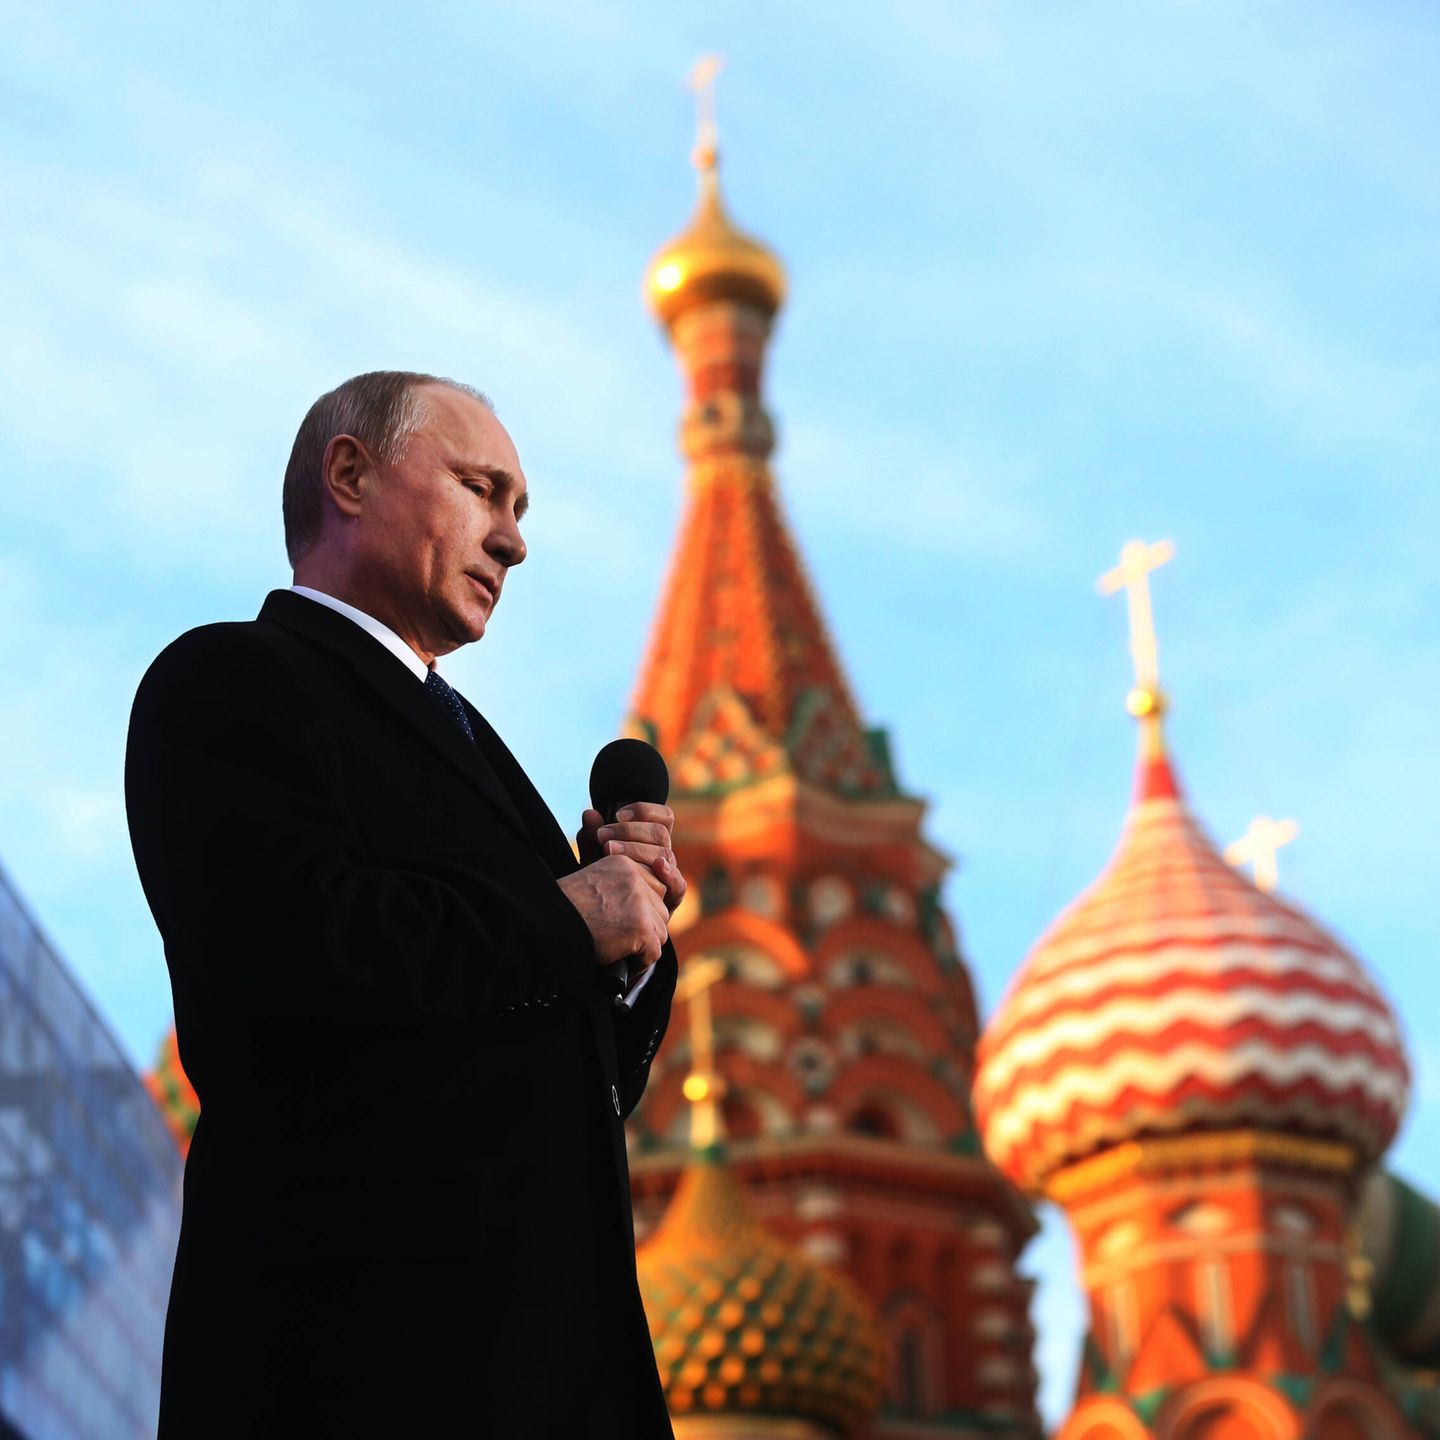 Putin en un acto del primer aniversario de la anexión de Crimea en marzo de 2015. (Getty/Sasha Mordovets)